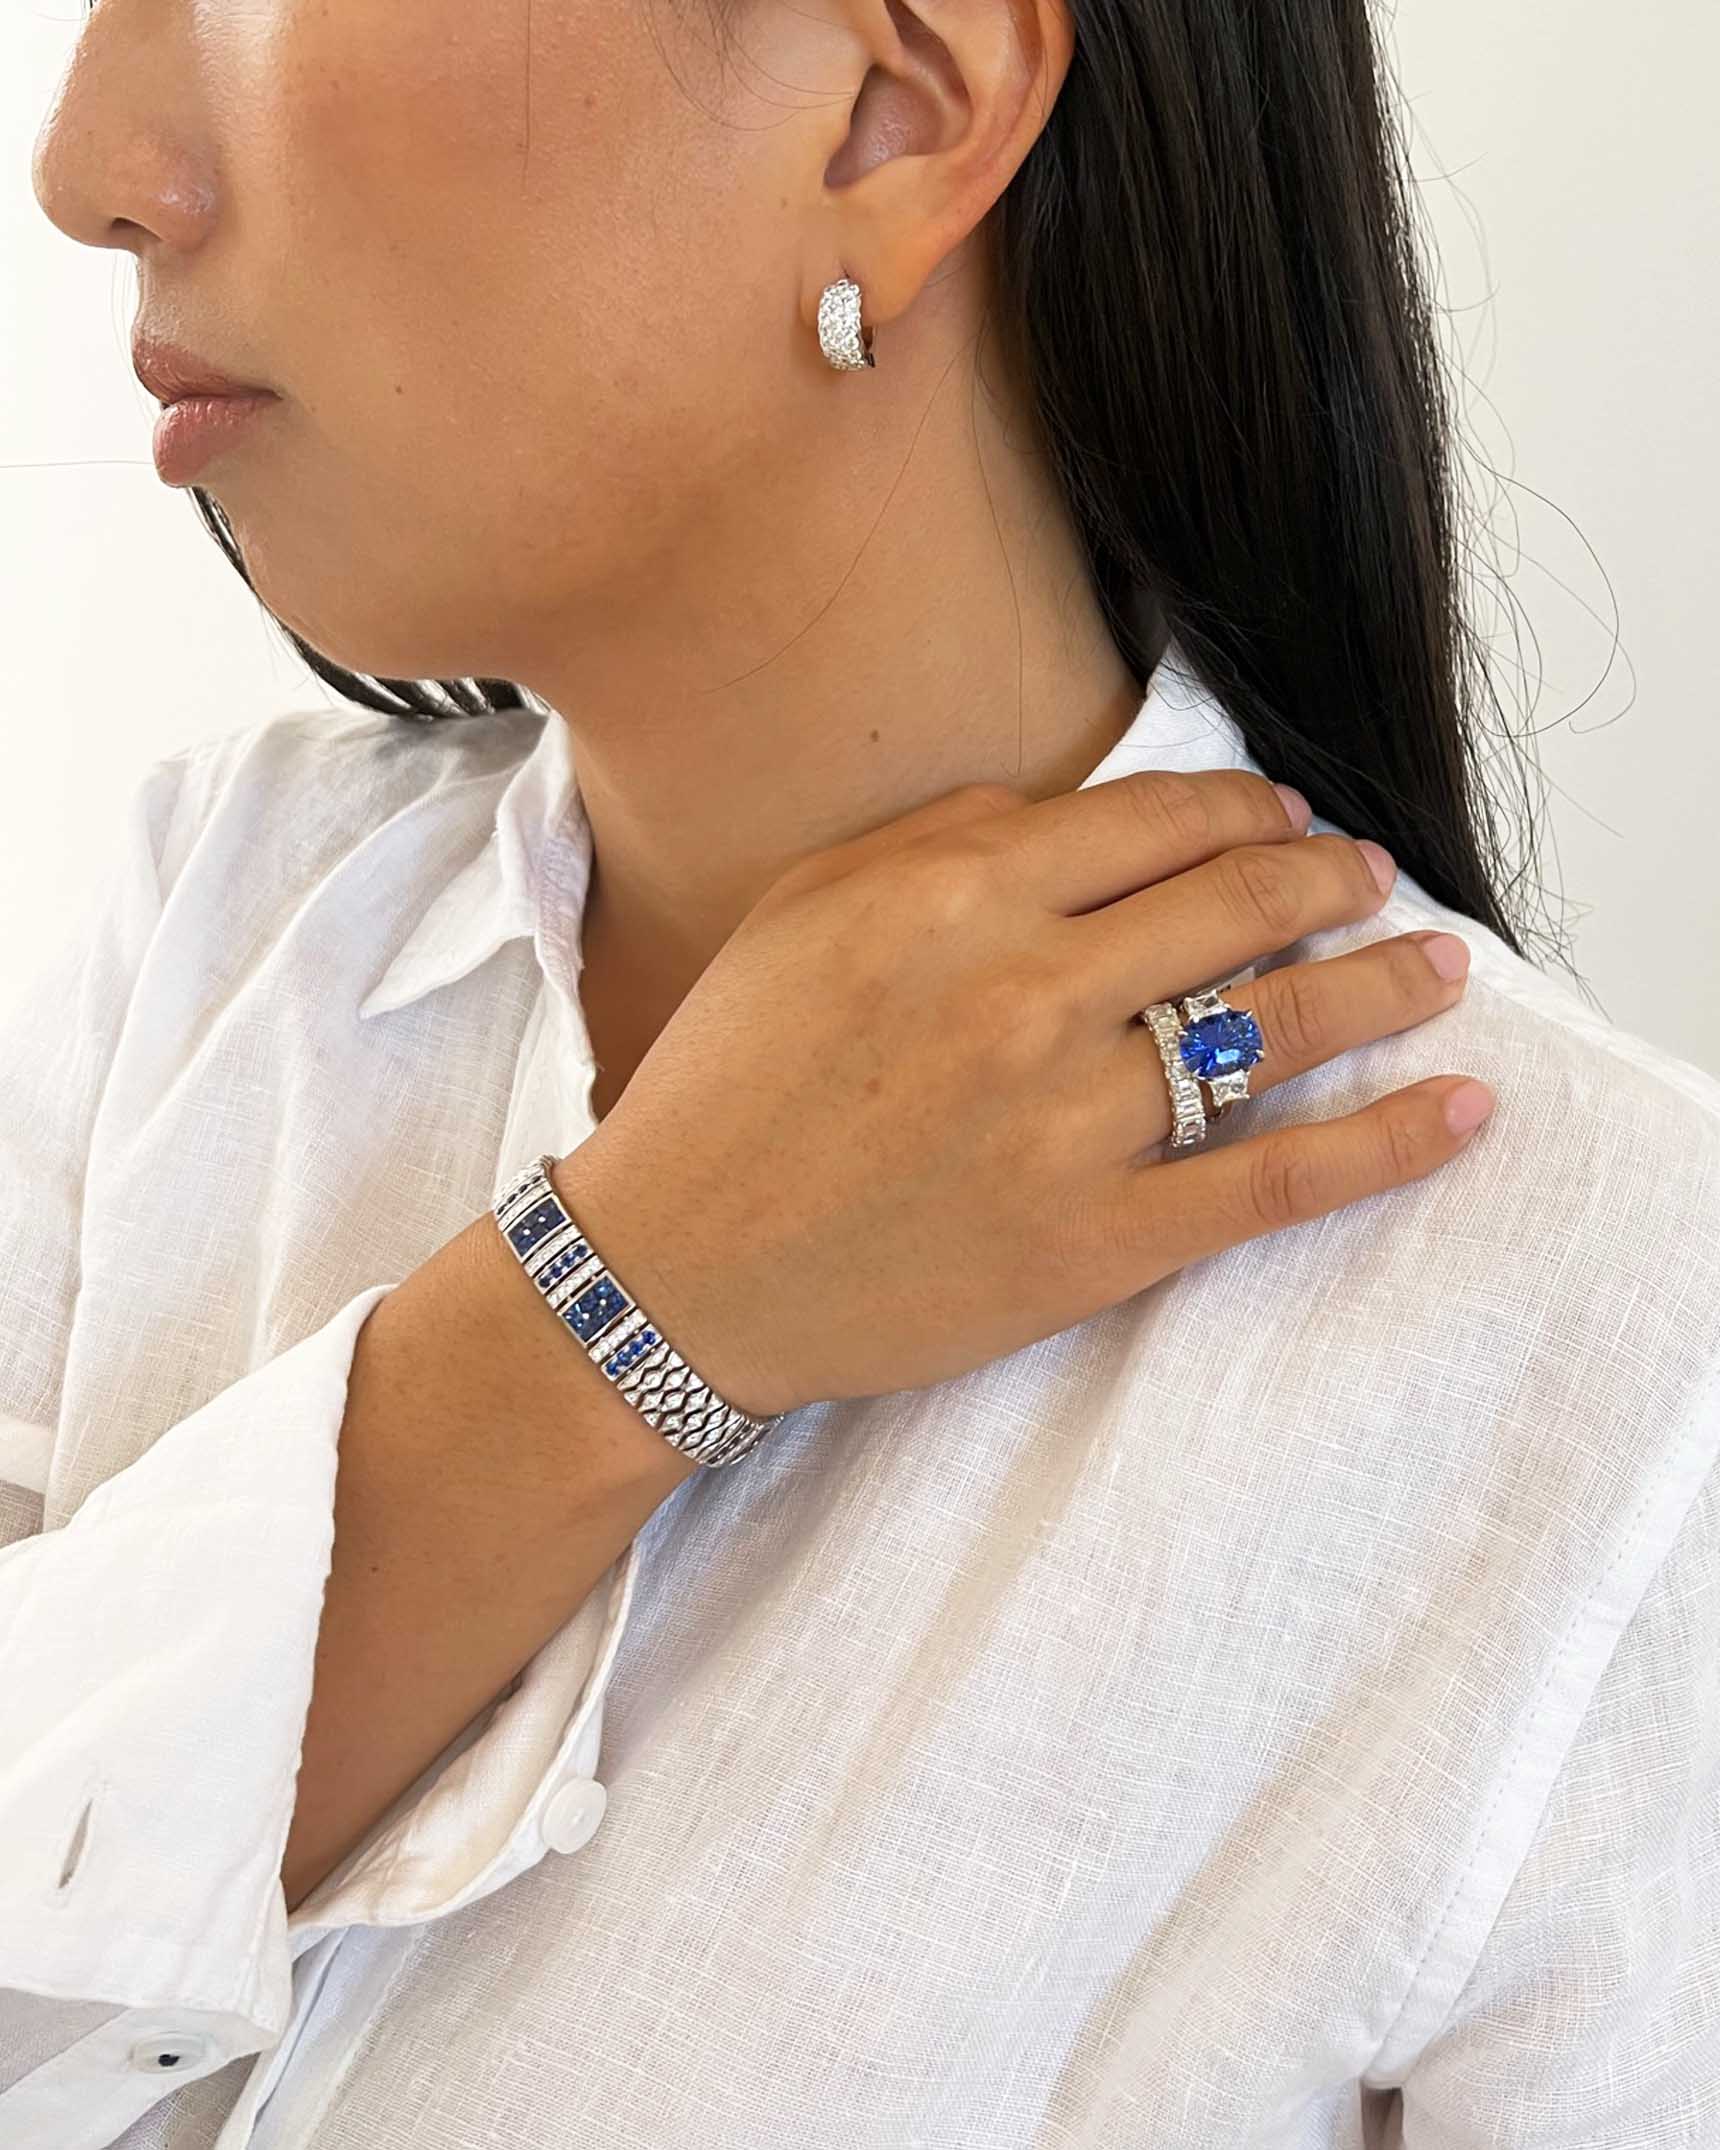 Blue Sapphire and Diamond Earrings_Bracelet and Rings EDFKK03873 – BCDKK02650 – RADPL09387 – RCDSA01946